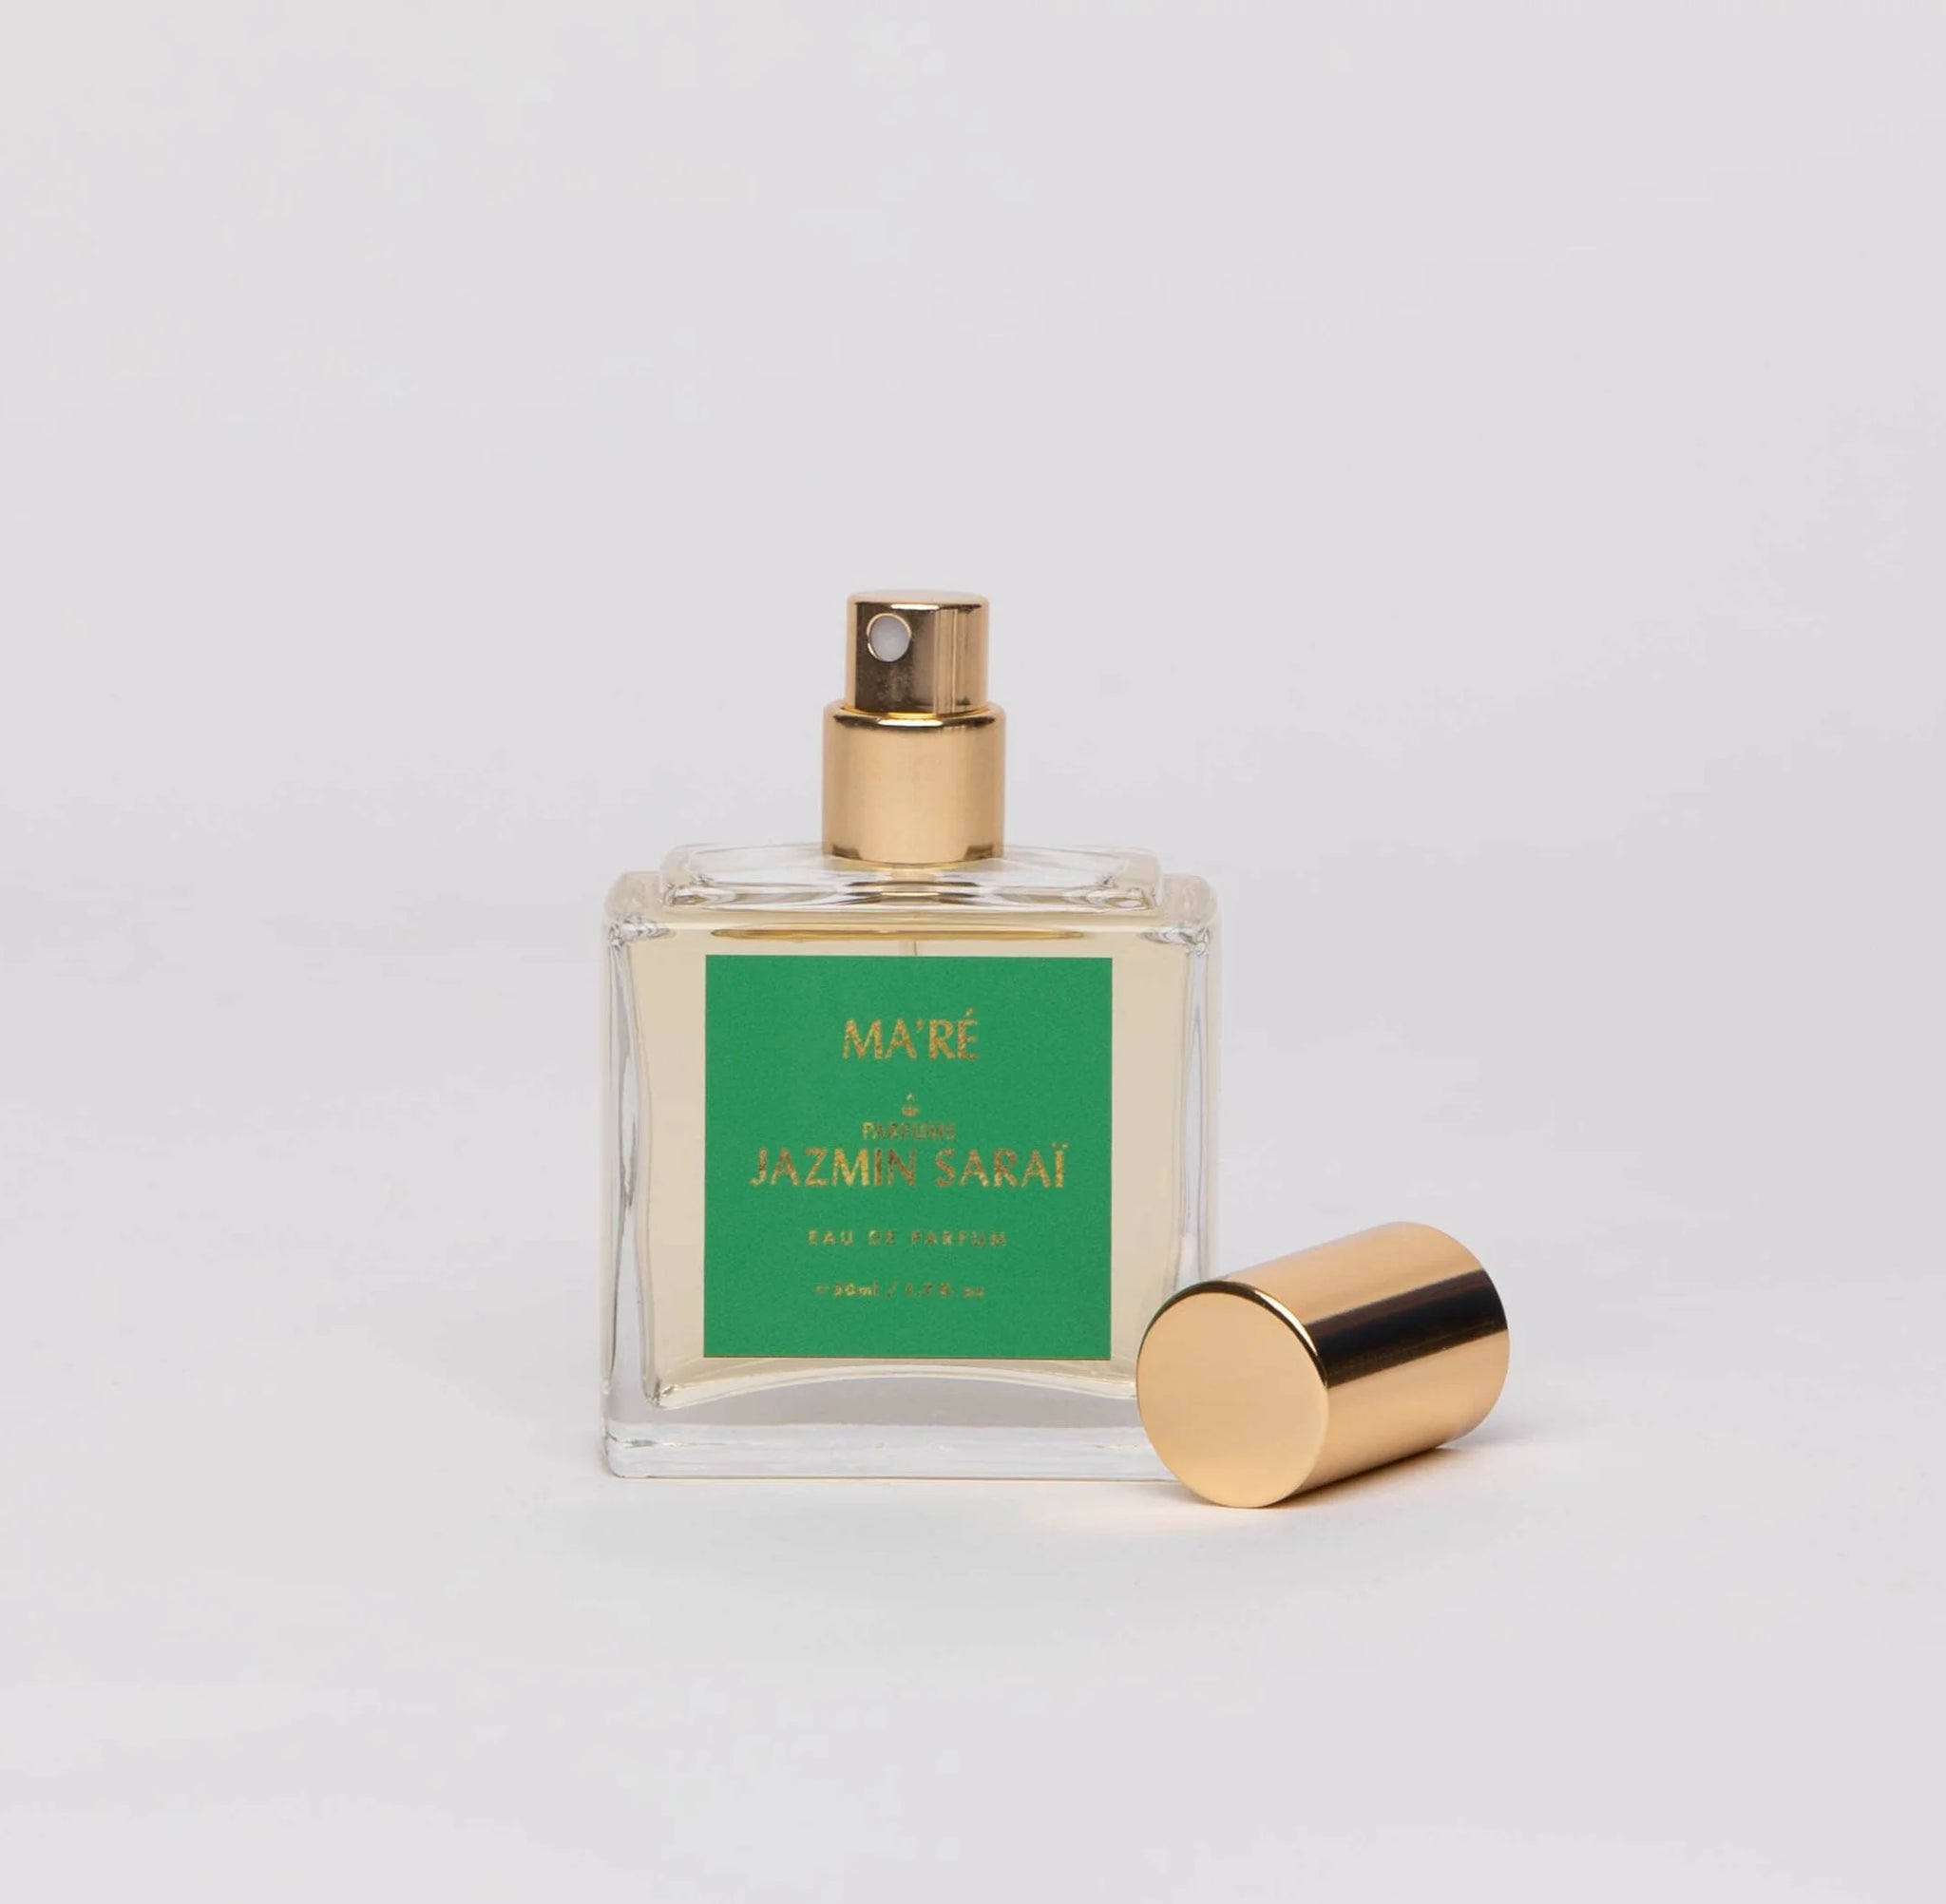 Jazmin Sarai mare Perfume